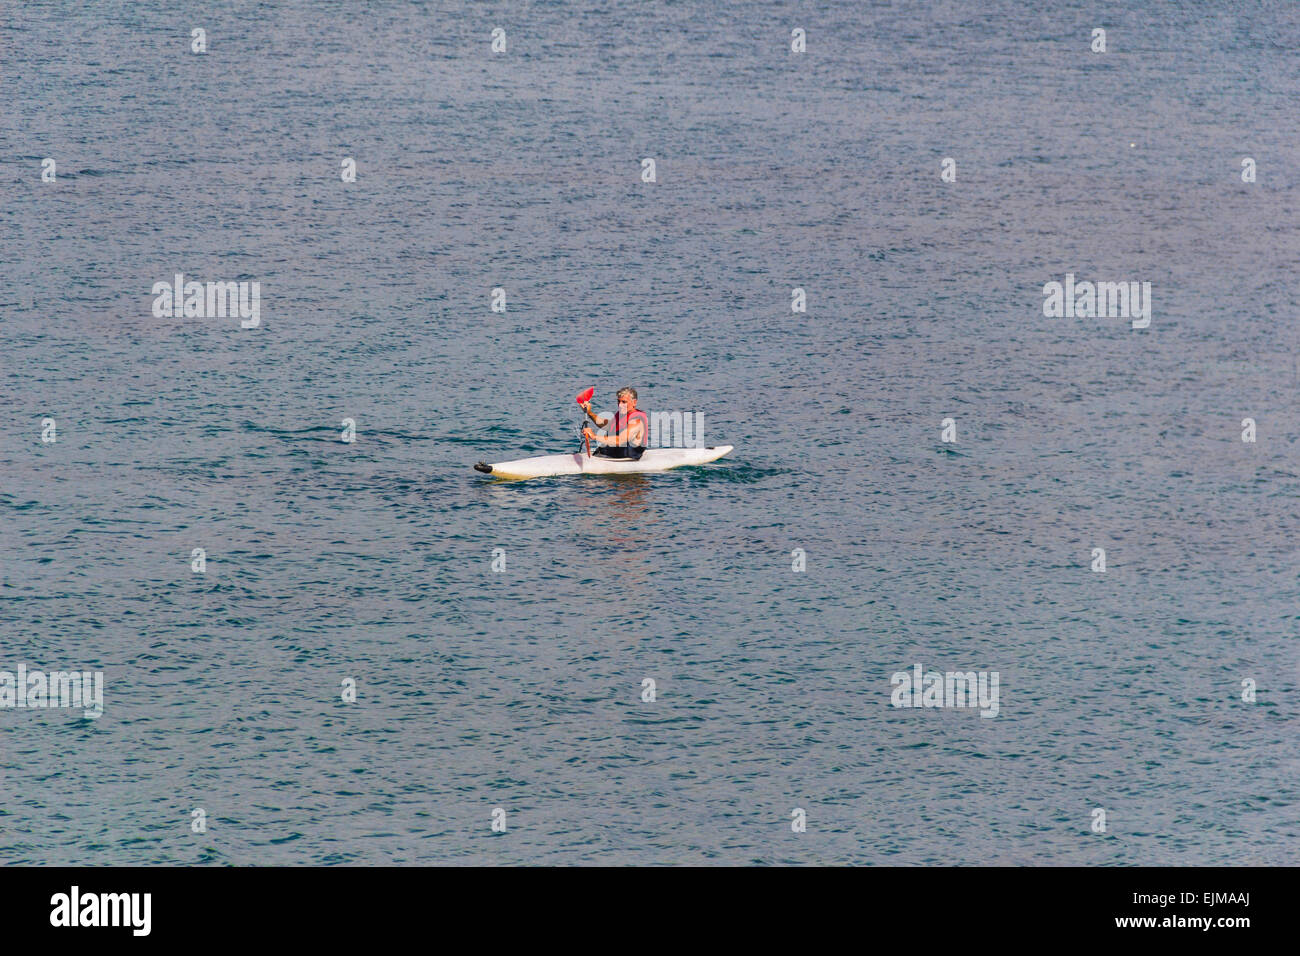 Single person kayaking at Cardigan Bay at Criccieth, North Wales, United Kingdom. Stock Photo